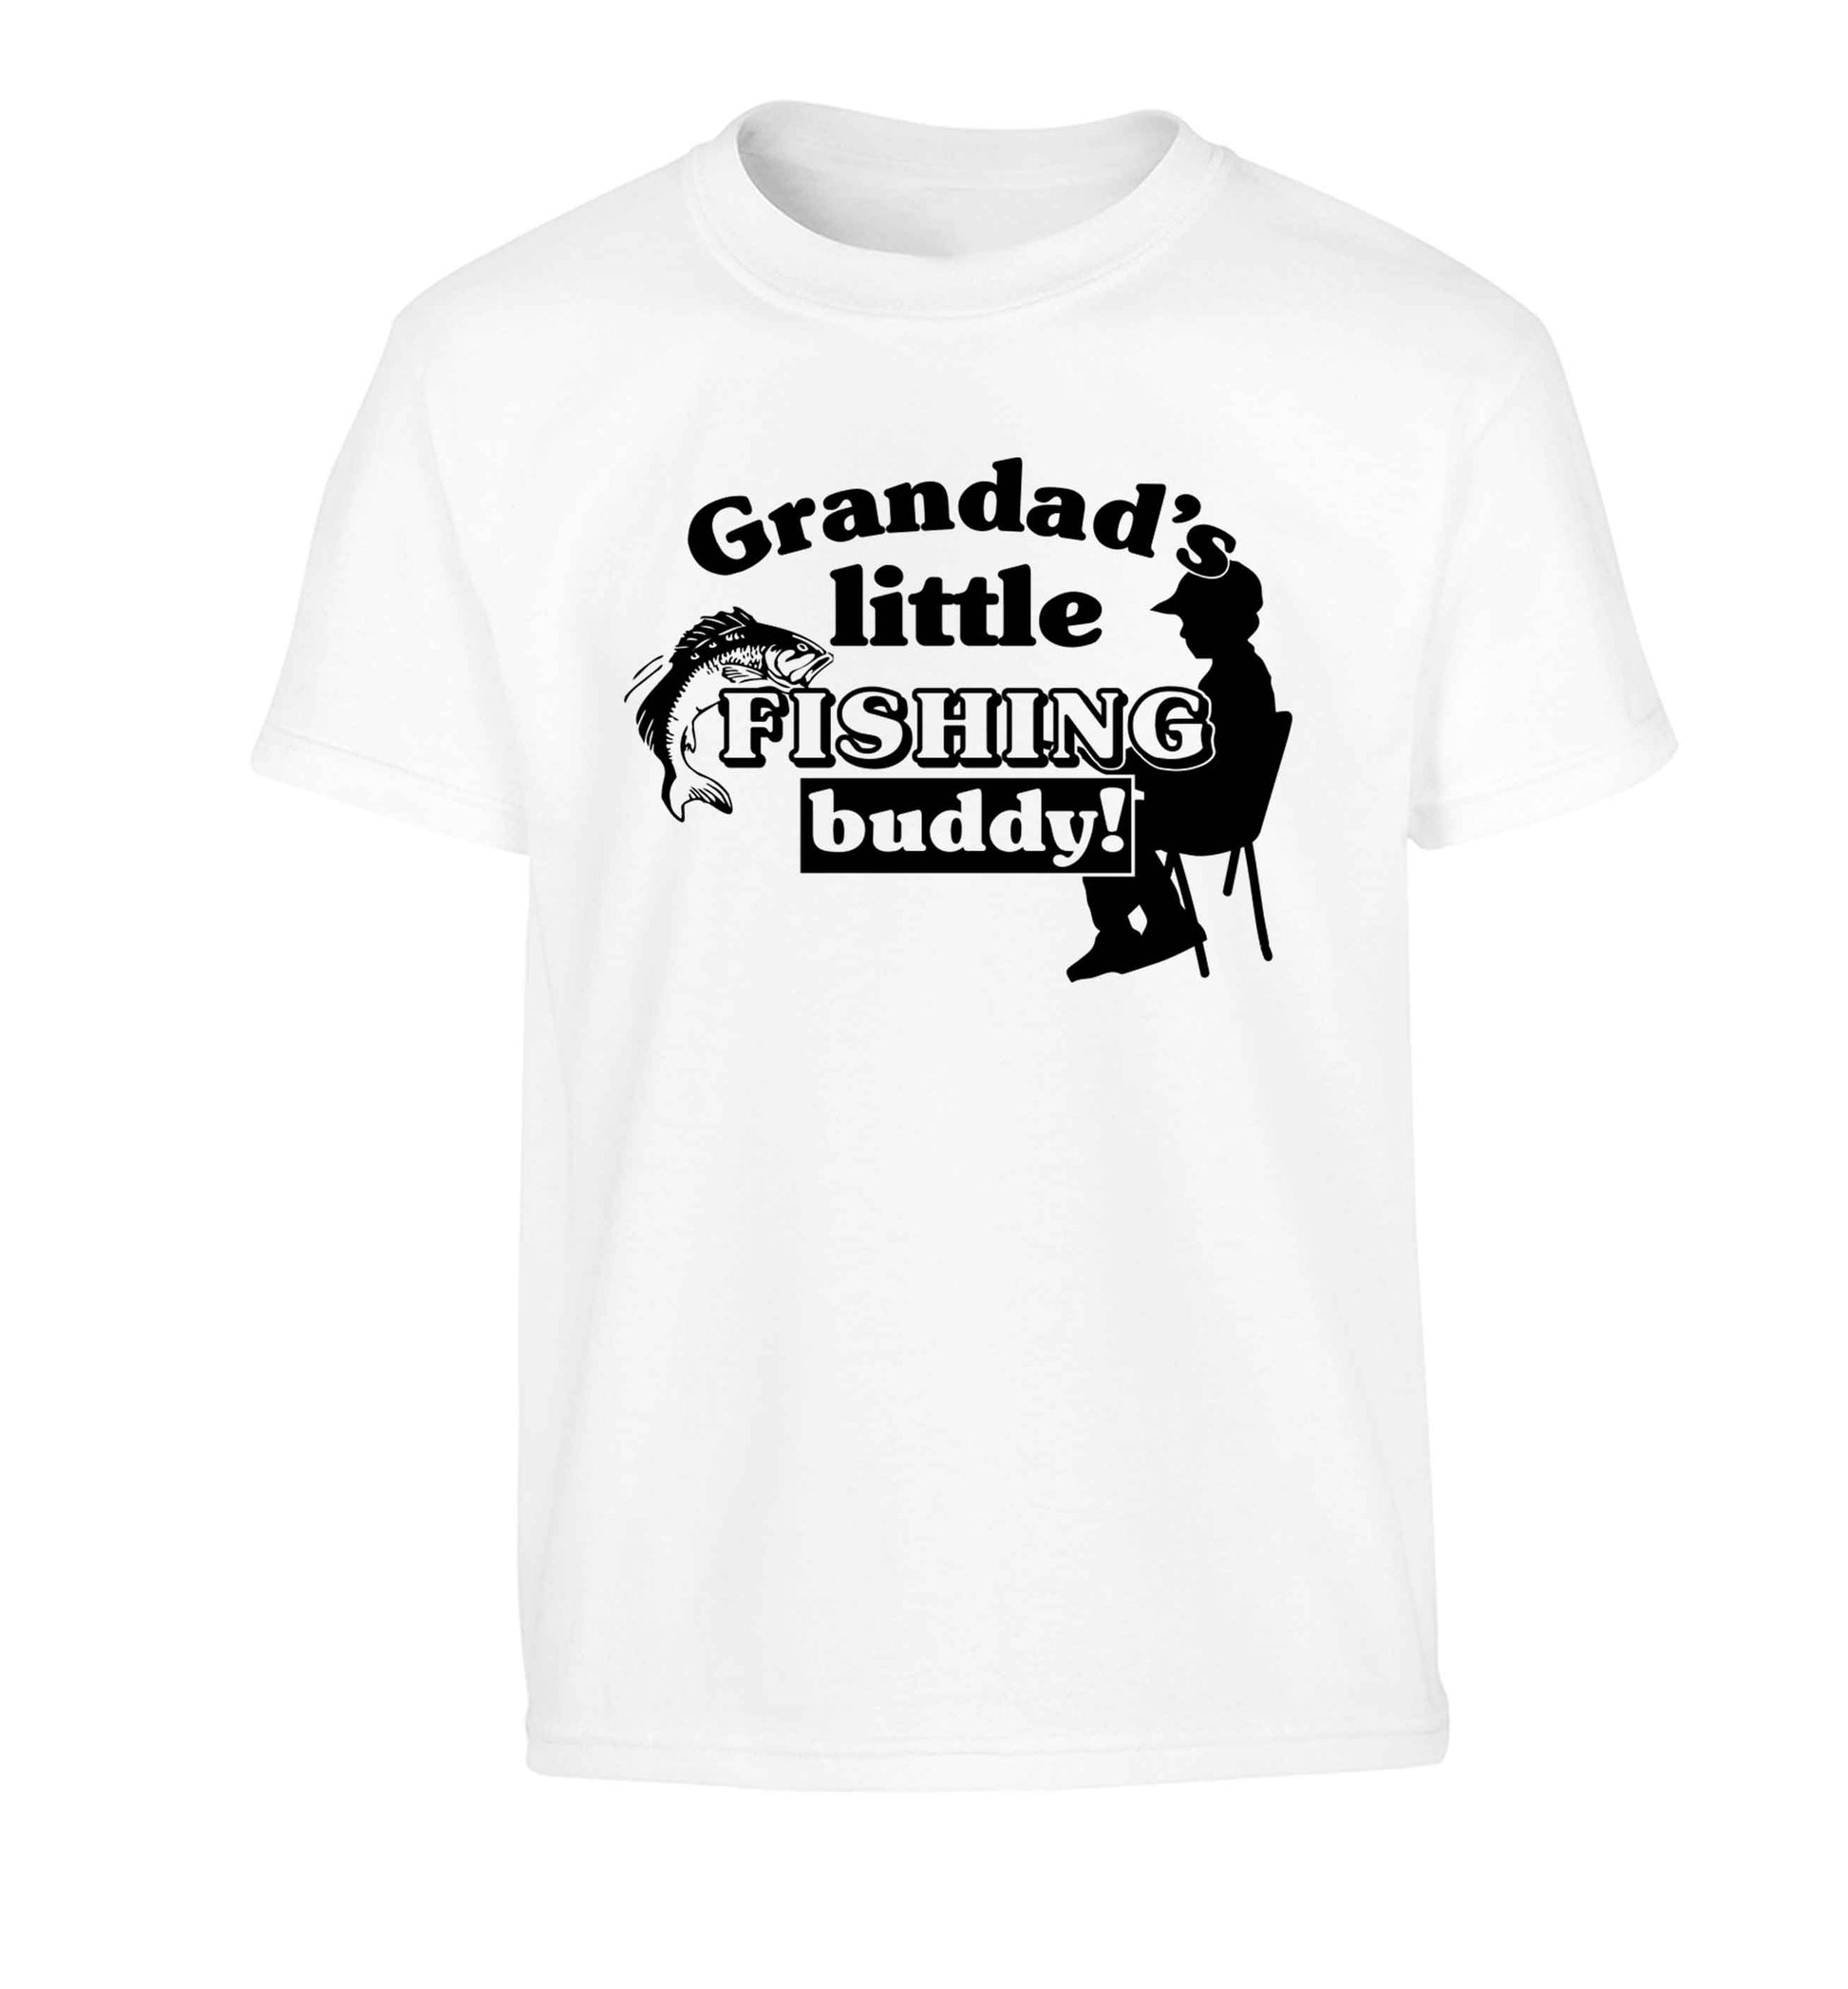 Grandad's little fishing buddy! Children's white Tshirt 12-13 Years